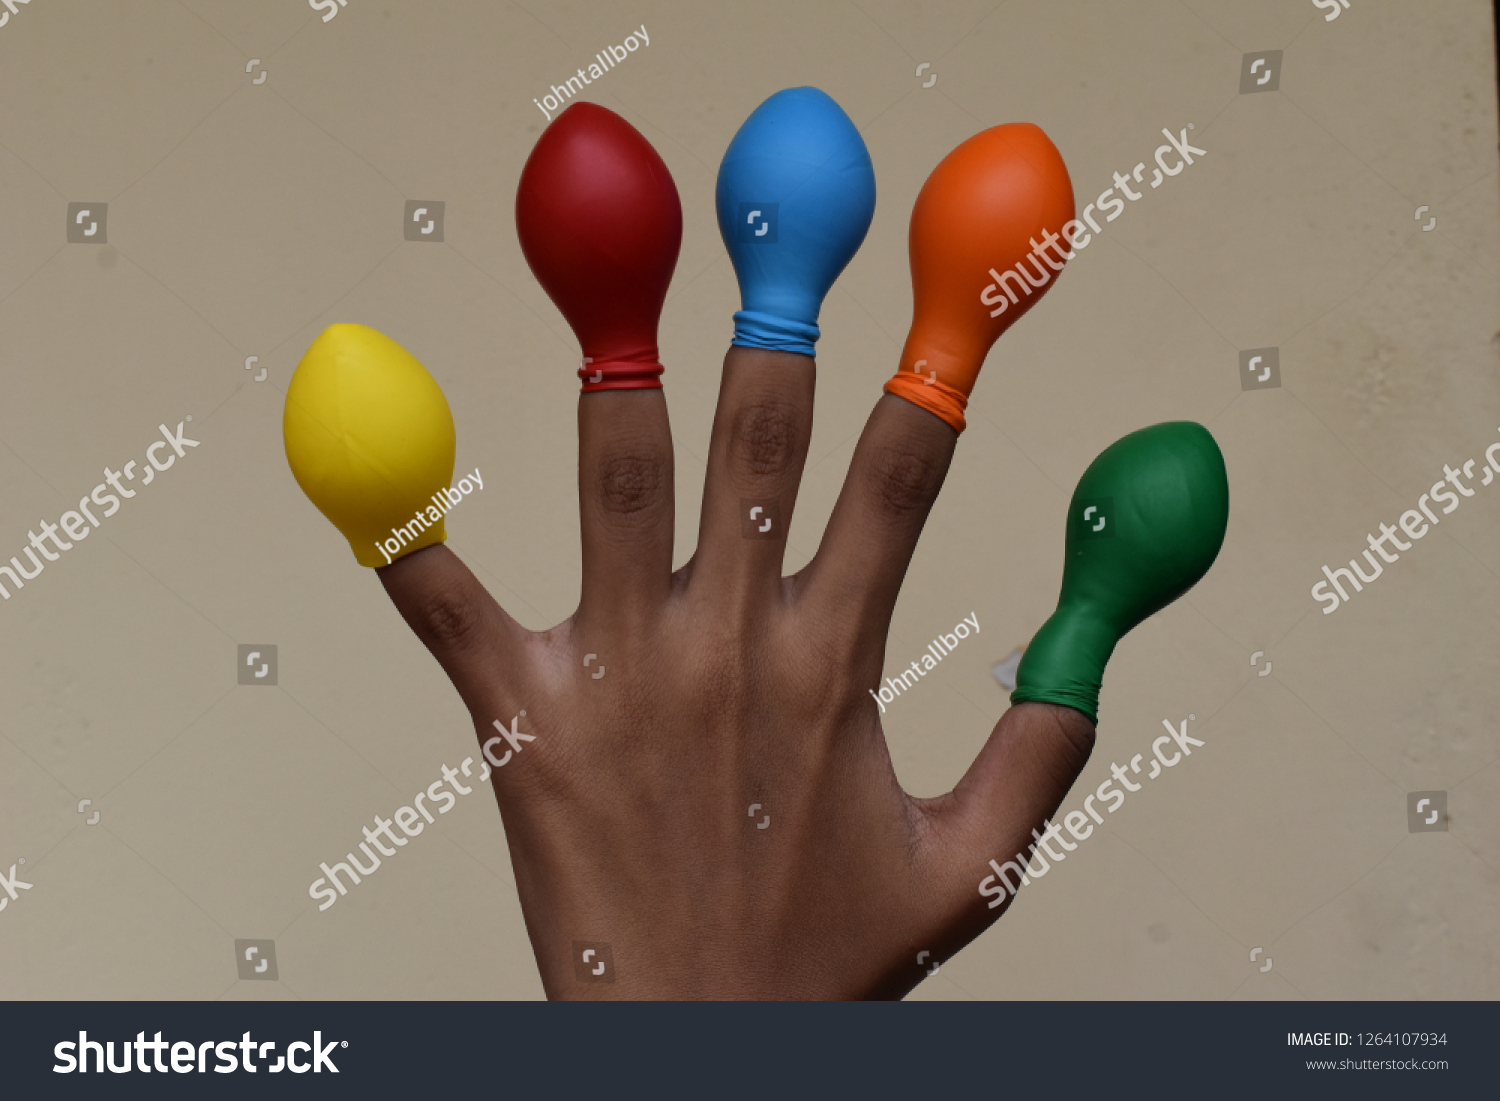 Balloon on finger or kids wearing balloon on fingers  #1264107934